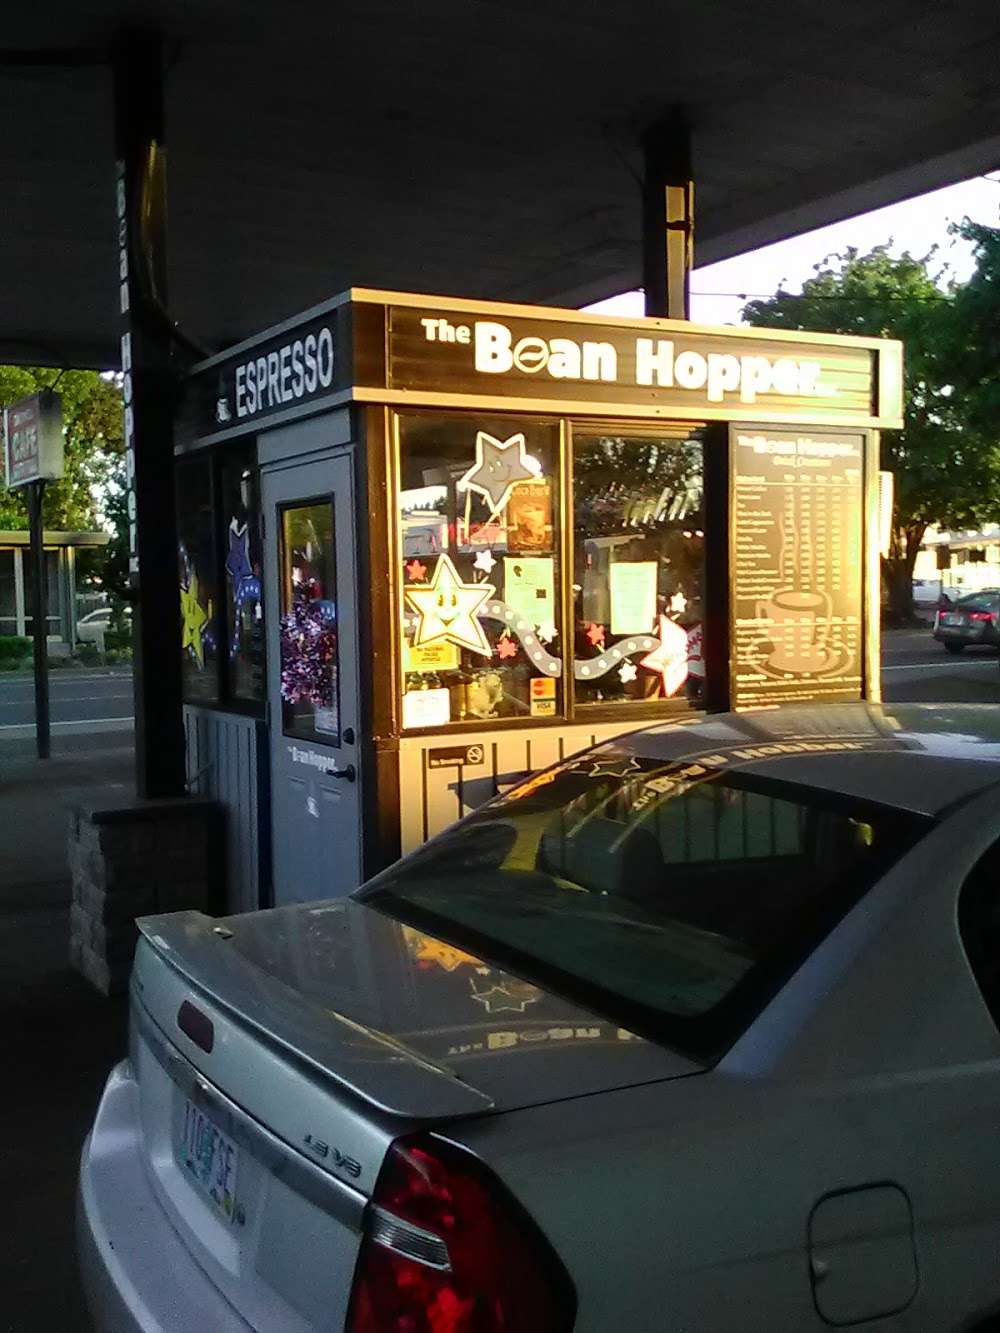 Bean Hopper